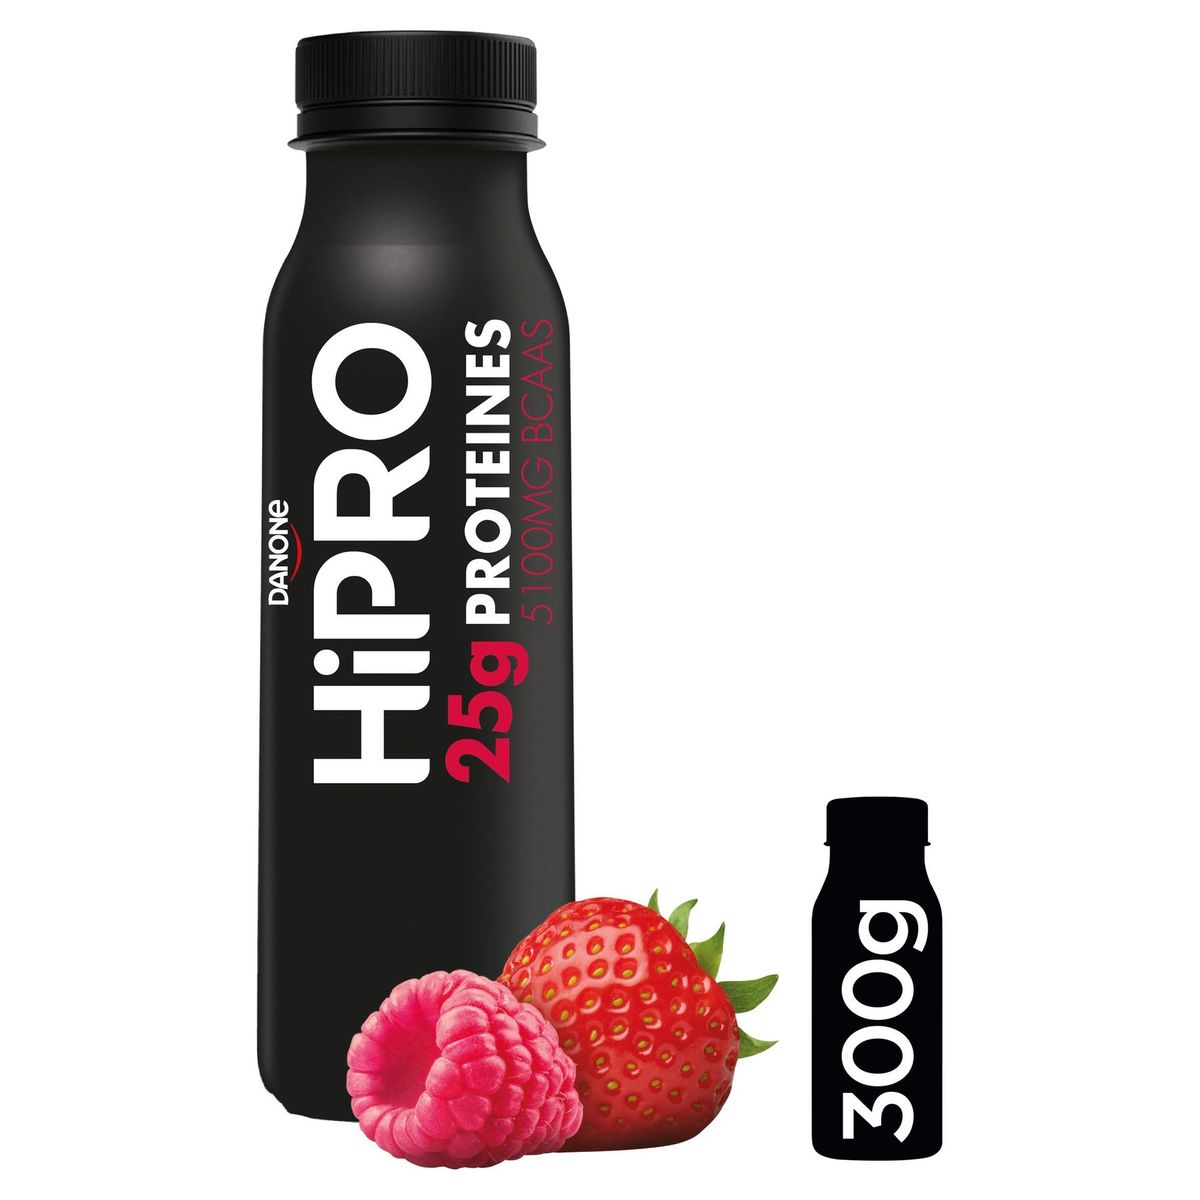 HiPRO à Boire Saveur Fraise-Framboise avec 25 g de Protéines 300 g